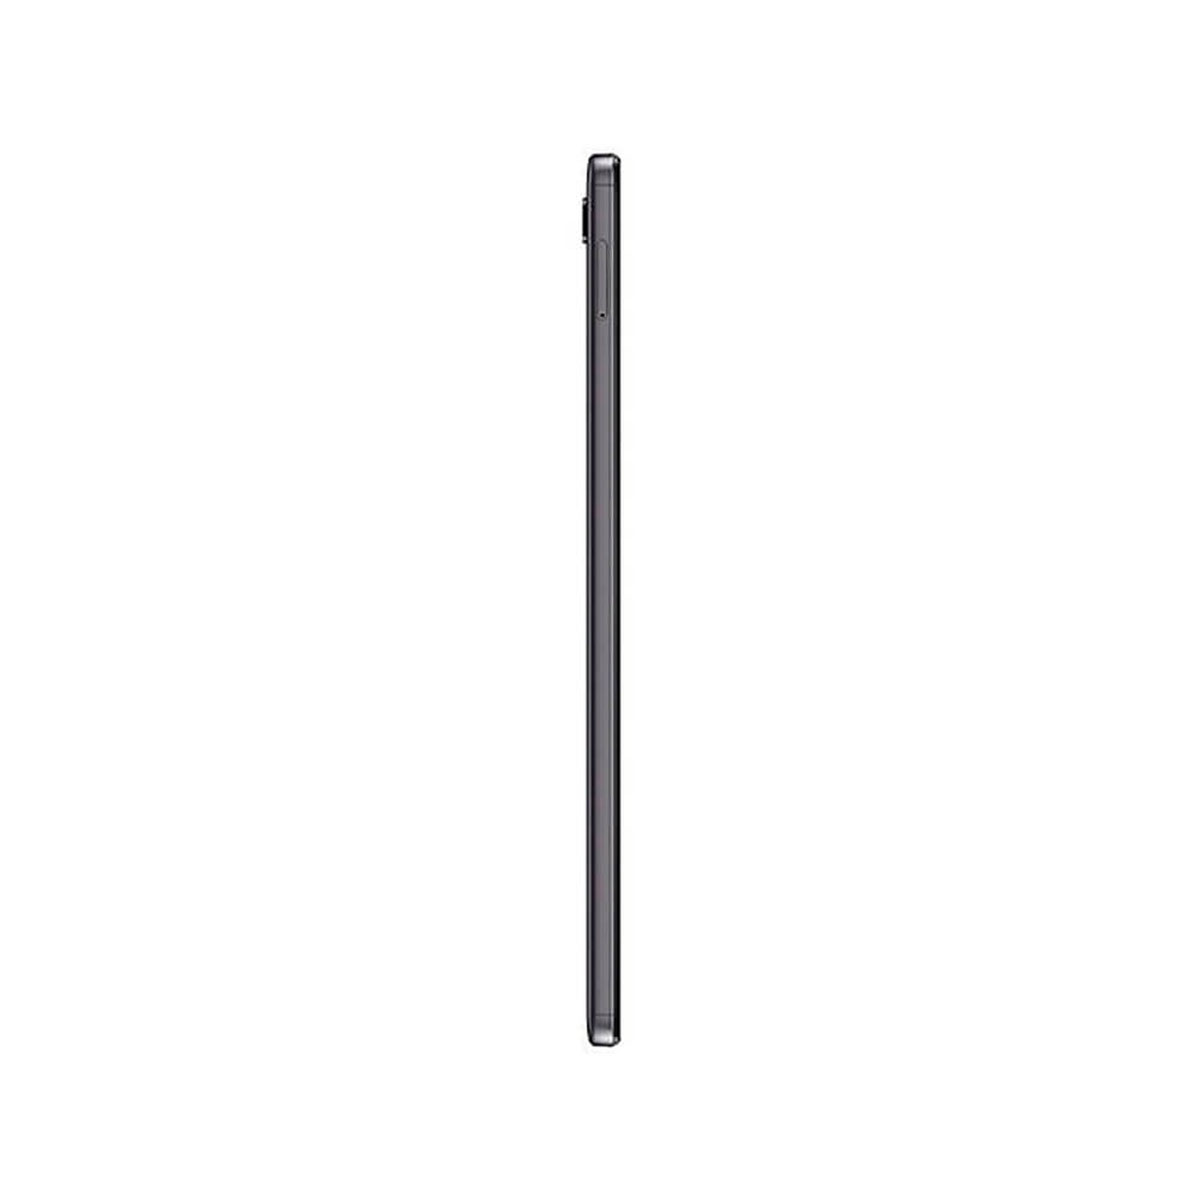 Lite, SAMSUNG Galaxy A7 Tablet, GB, 8,7 32 grau T220 Zoll, Tab